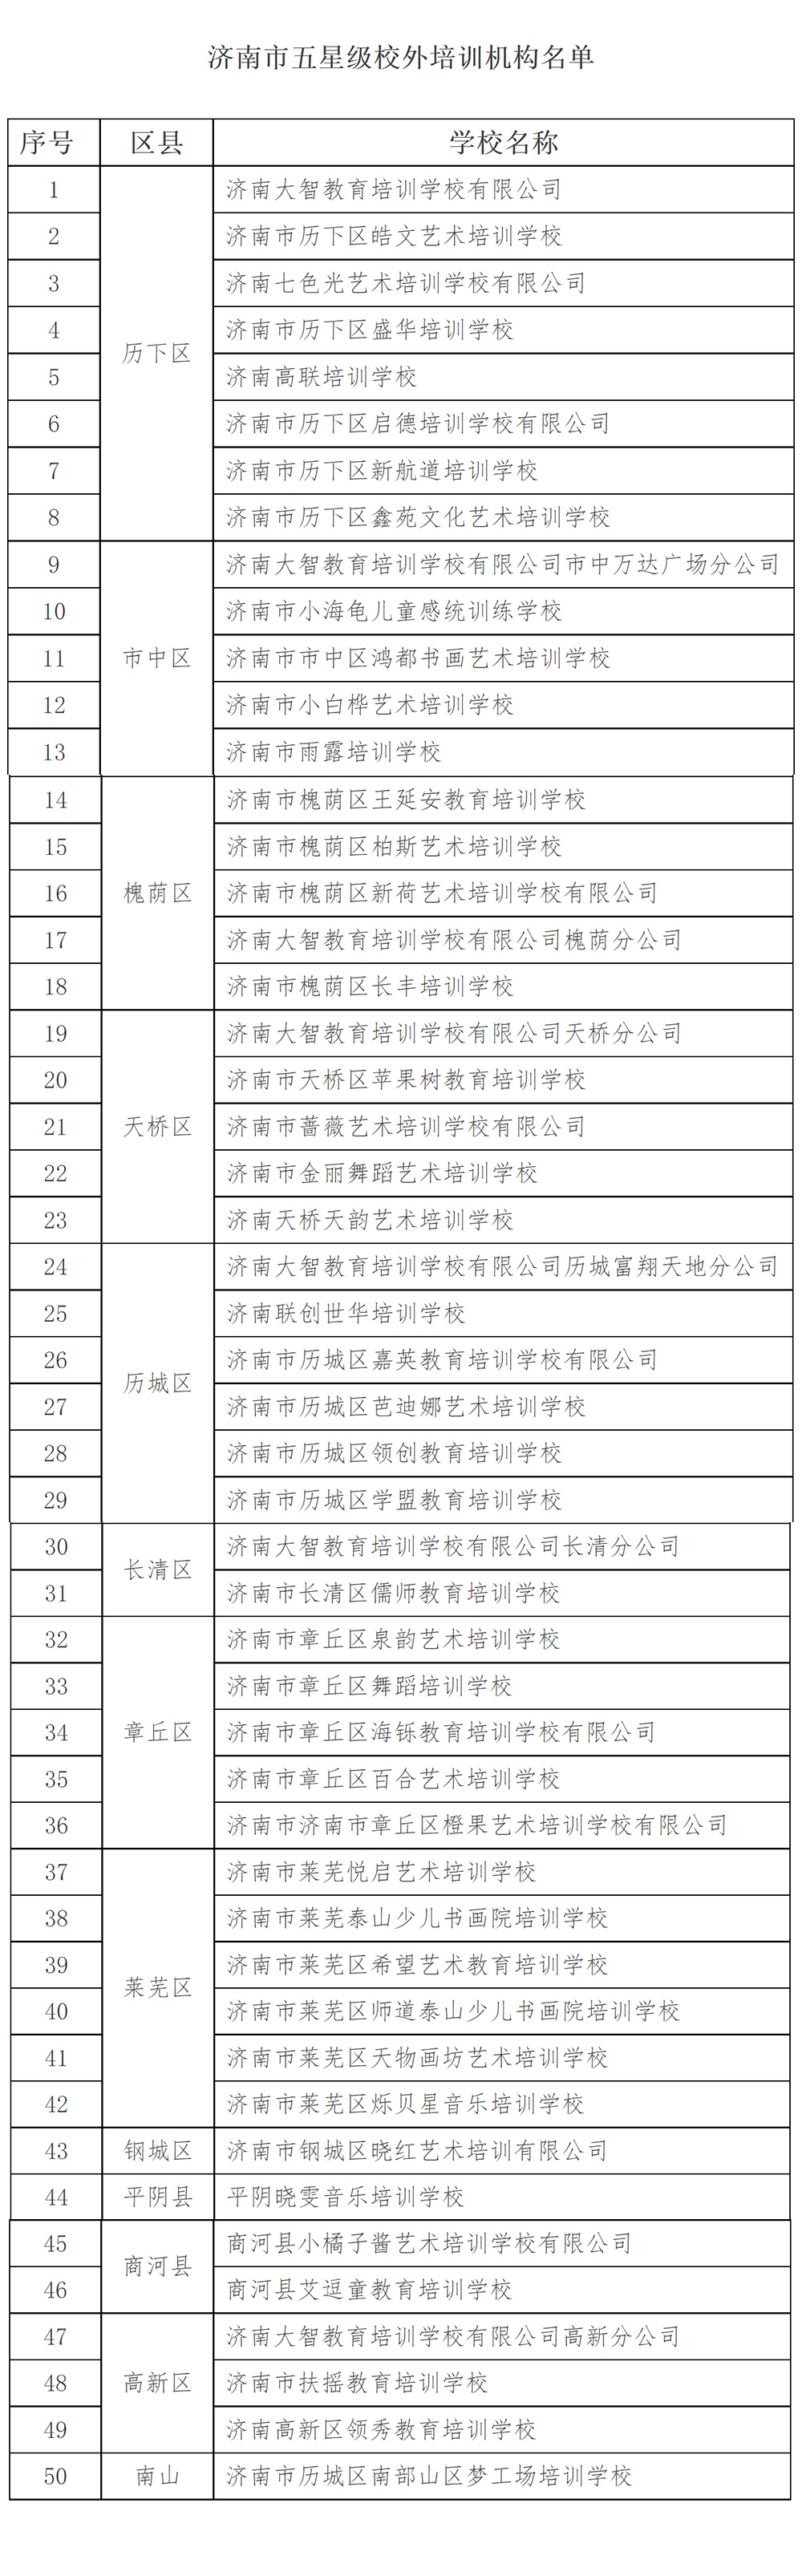 济南市五星级和四星级校外培训机构名单公示(图1)